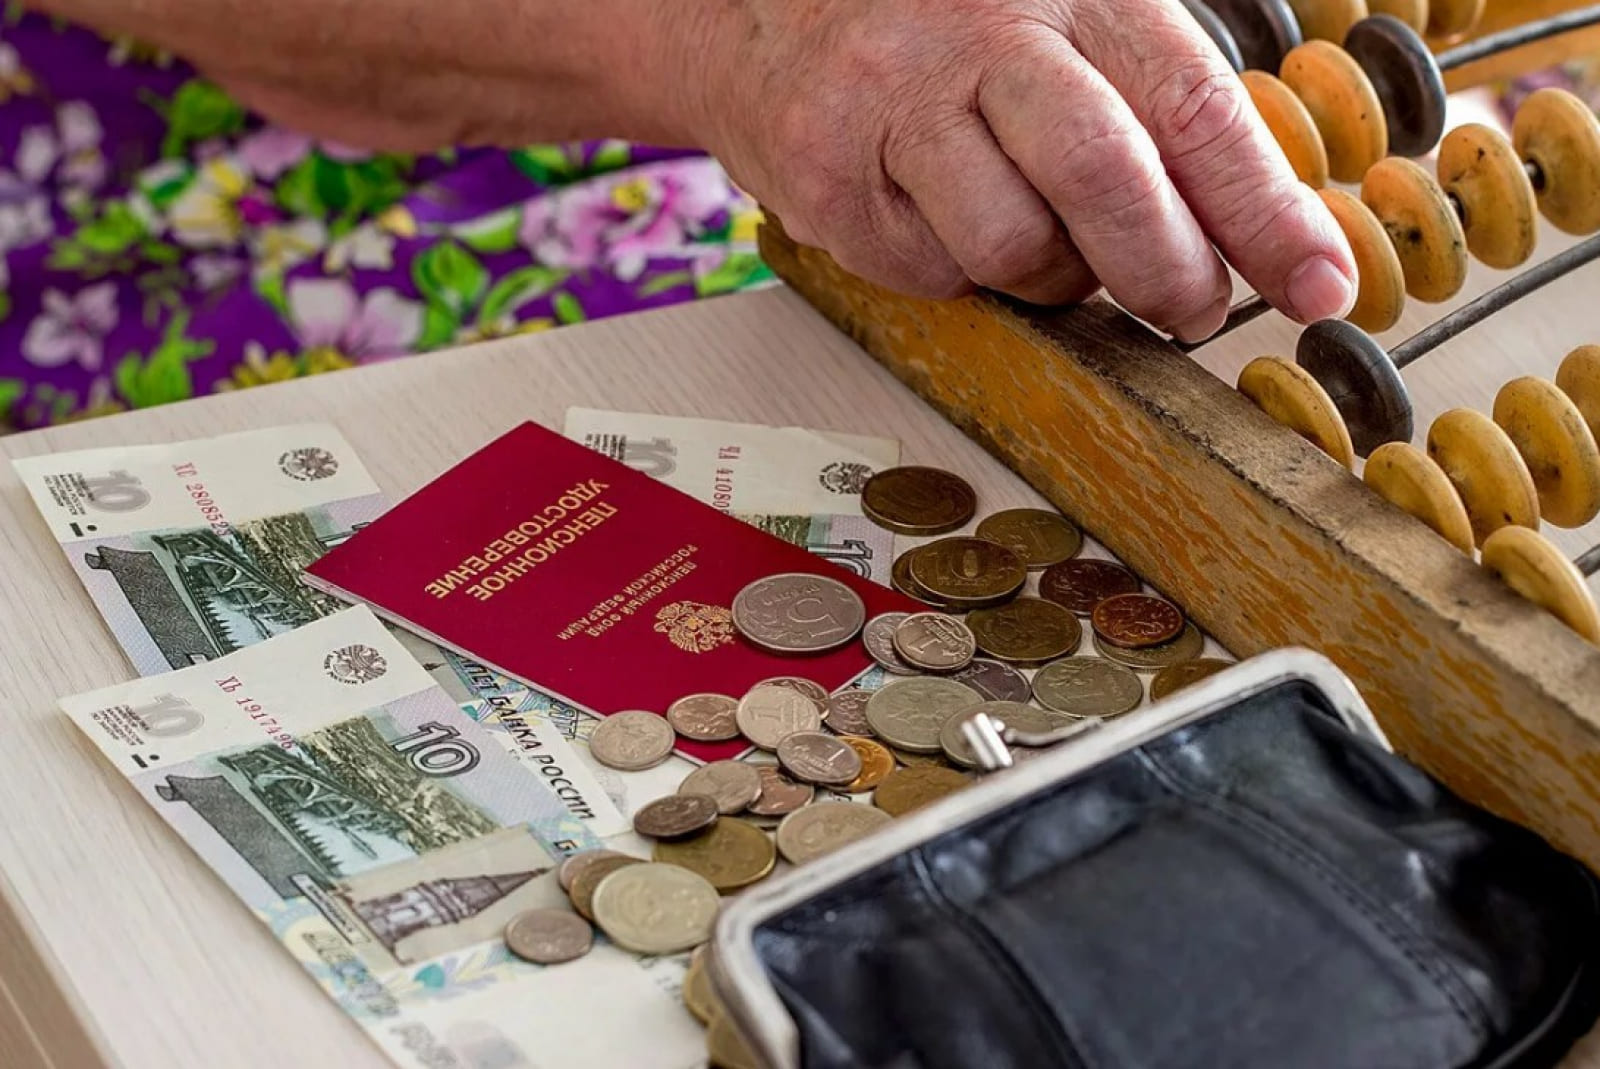  «Работающие пенсионеры получат прибавку»: в Госдуме приняли важное решение 